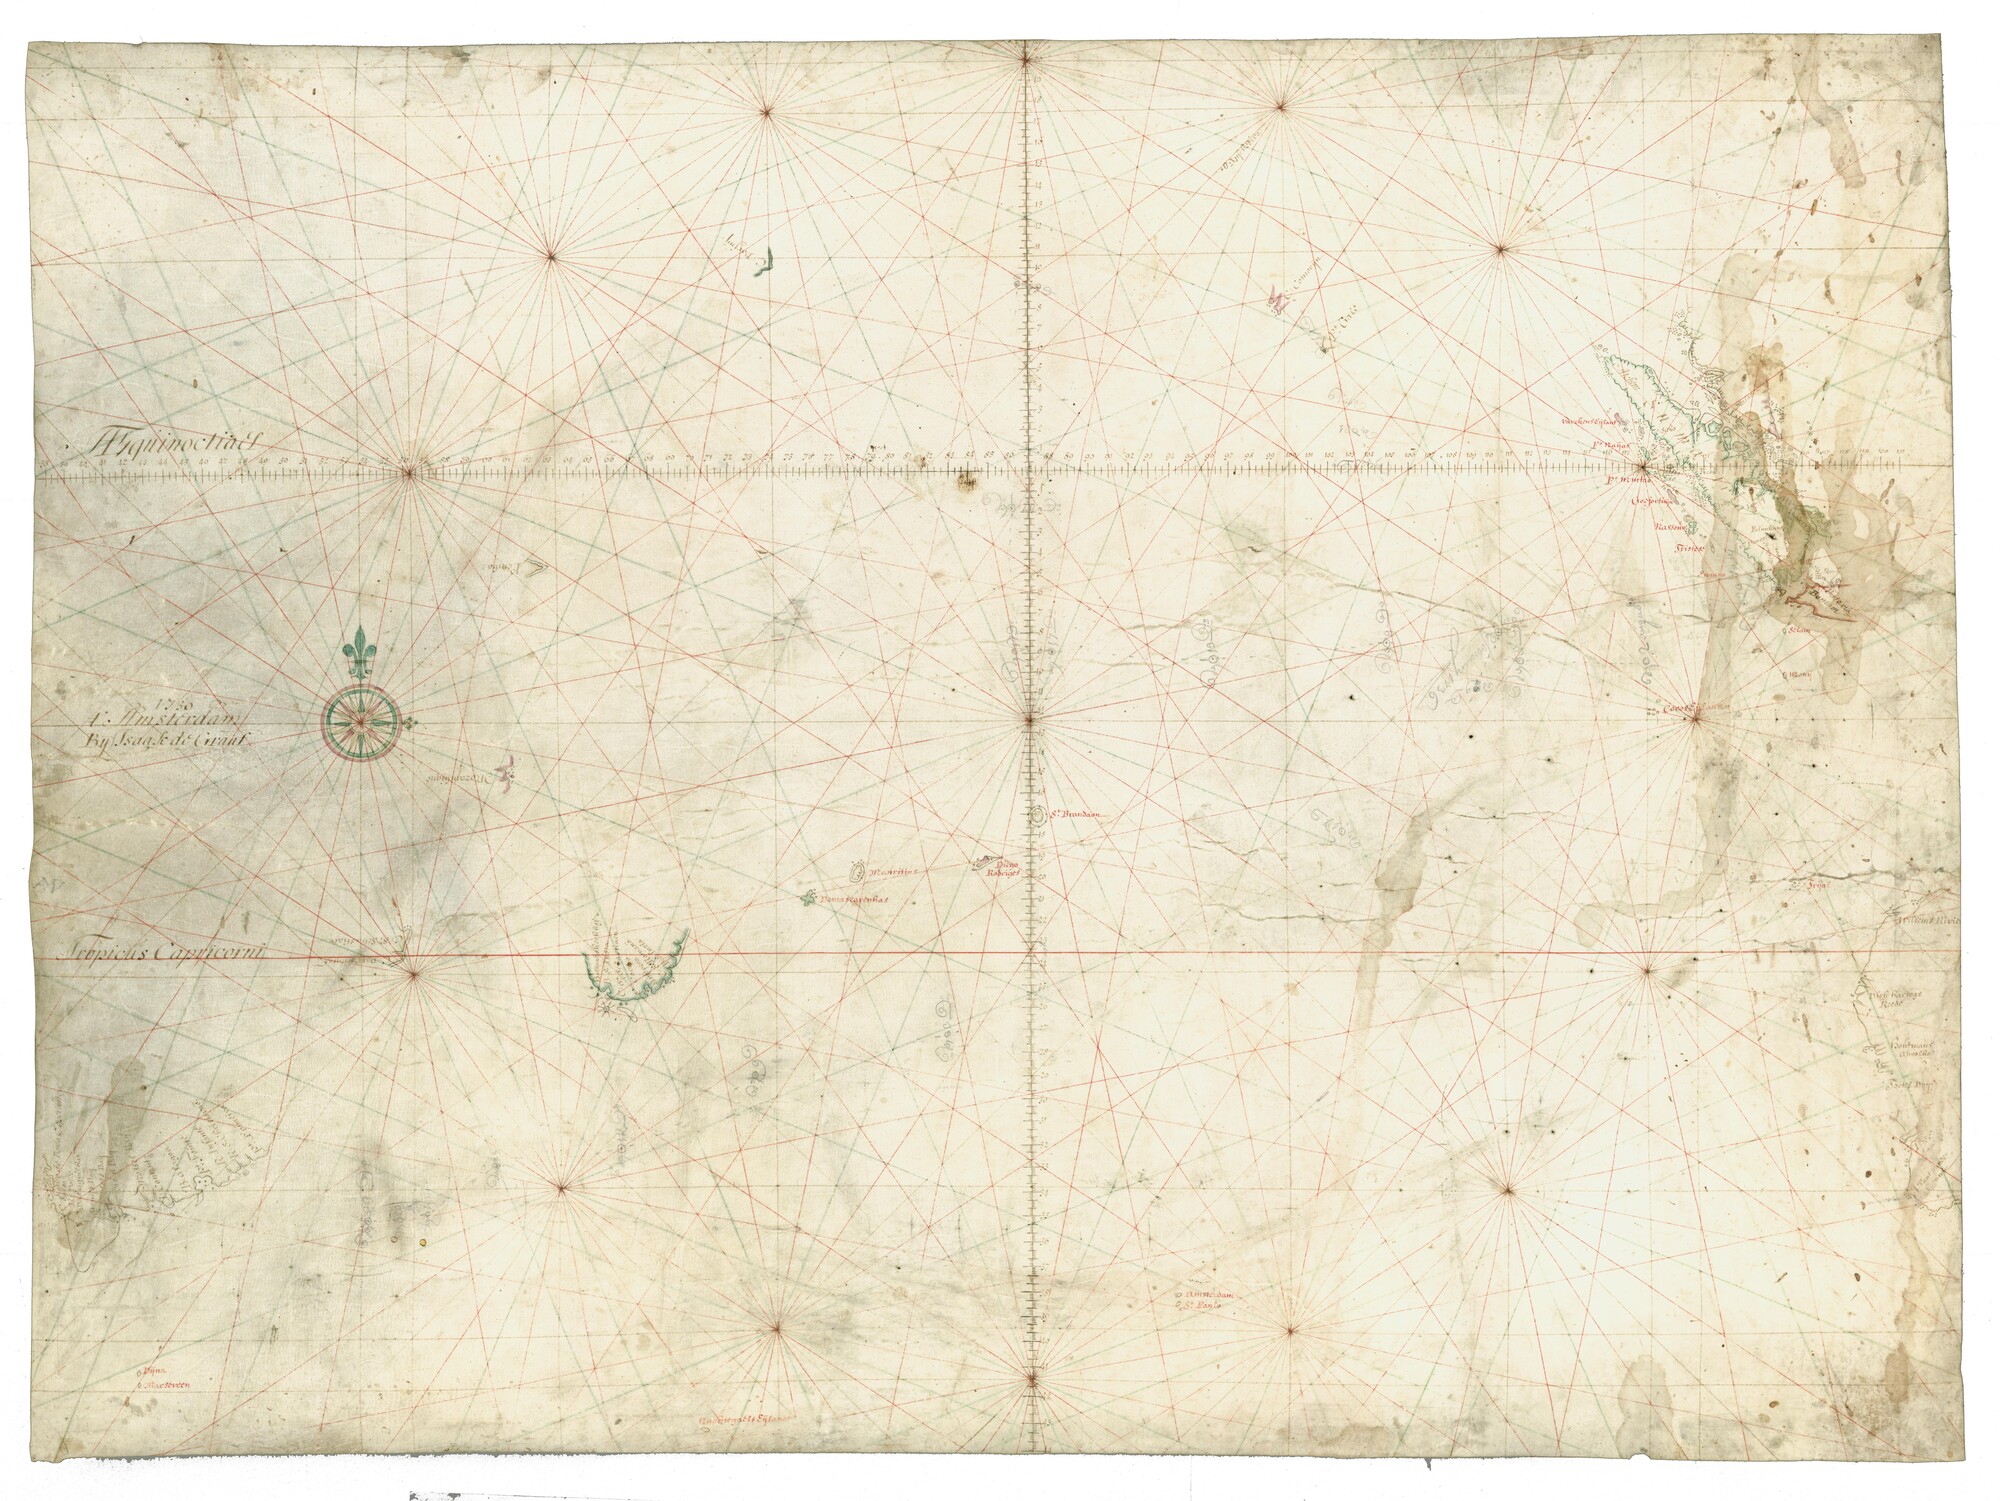 A.0145(127)6; Zeekaart van de Indische Oceaan met een deel van de zuidkusten van Afrika en Madagaskar, Sumatra en een deel van de westkust van Australië; perkamentkaart